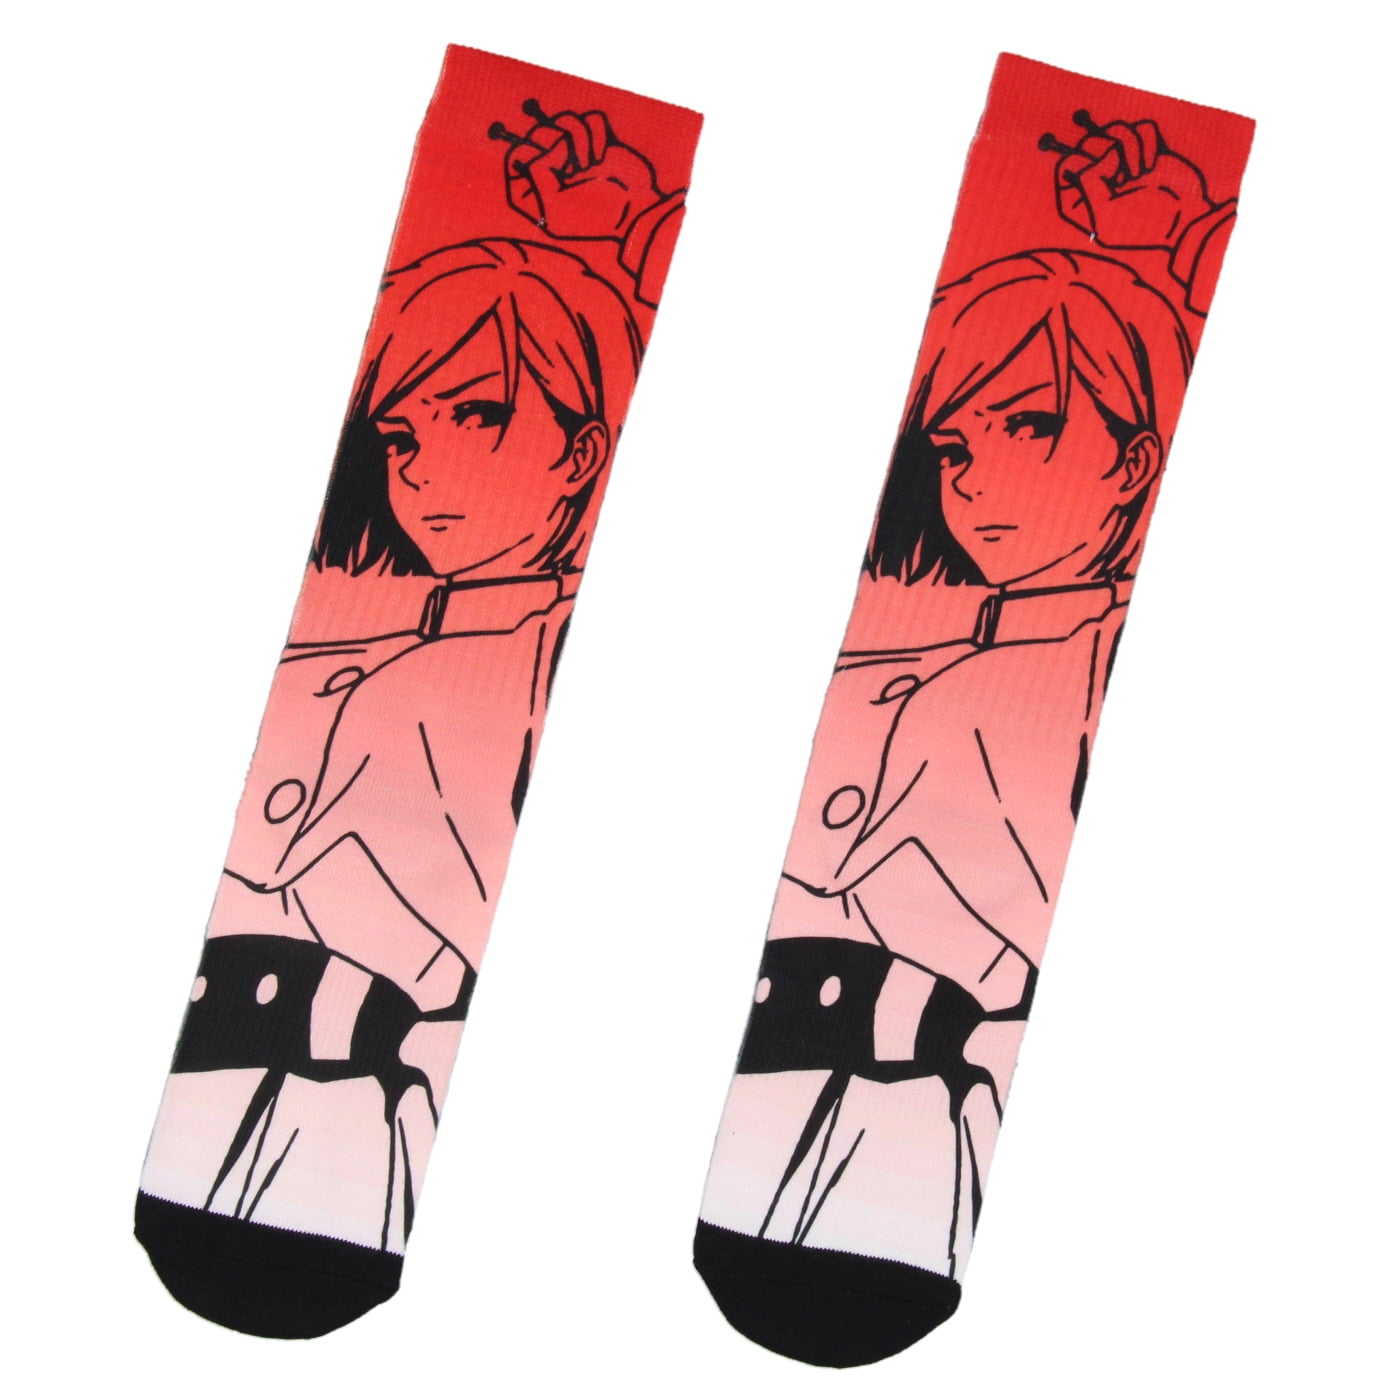 Choso JJk Manga Socks Merch For Men Women Red Blood Sports Socks Warm Best  Gifts - AliExpress